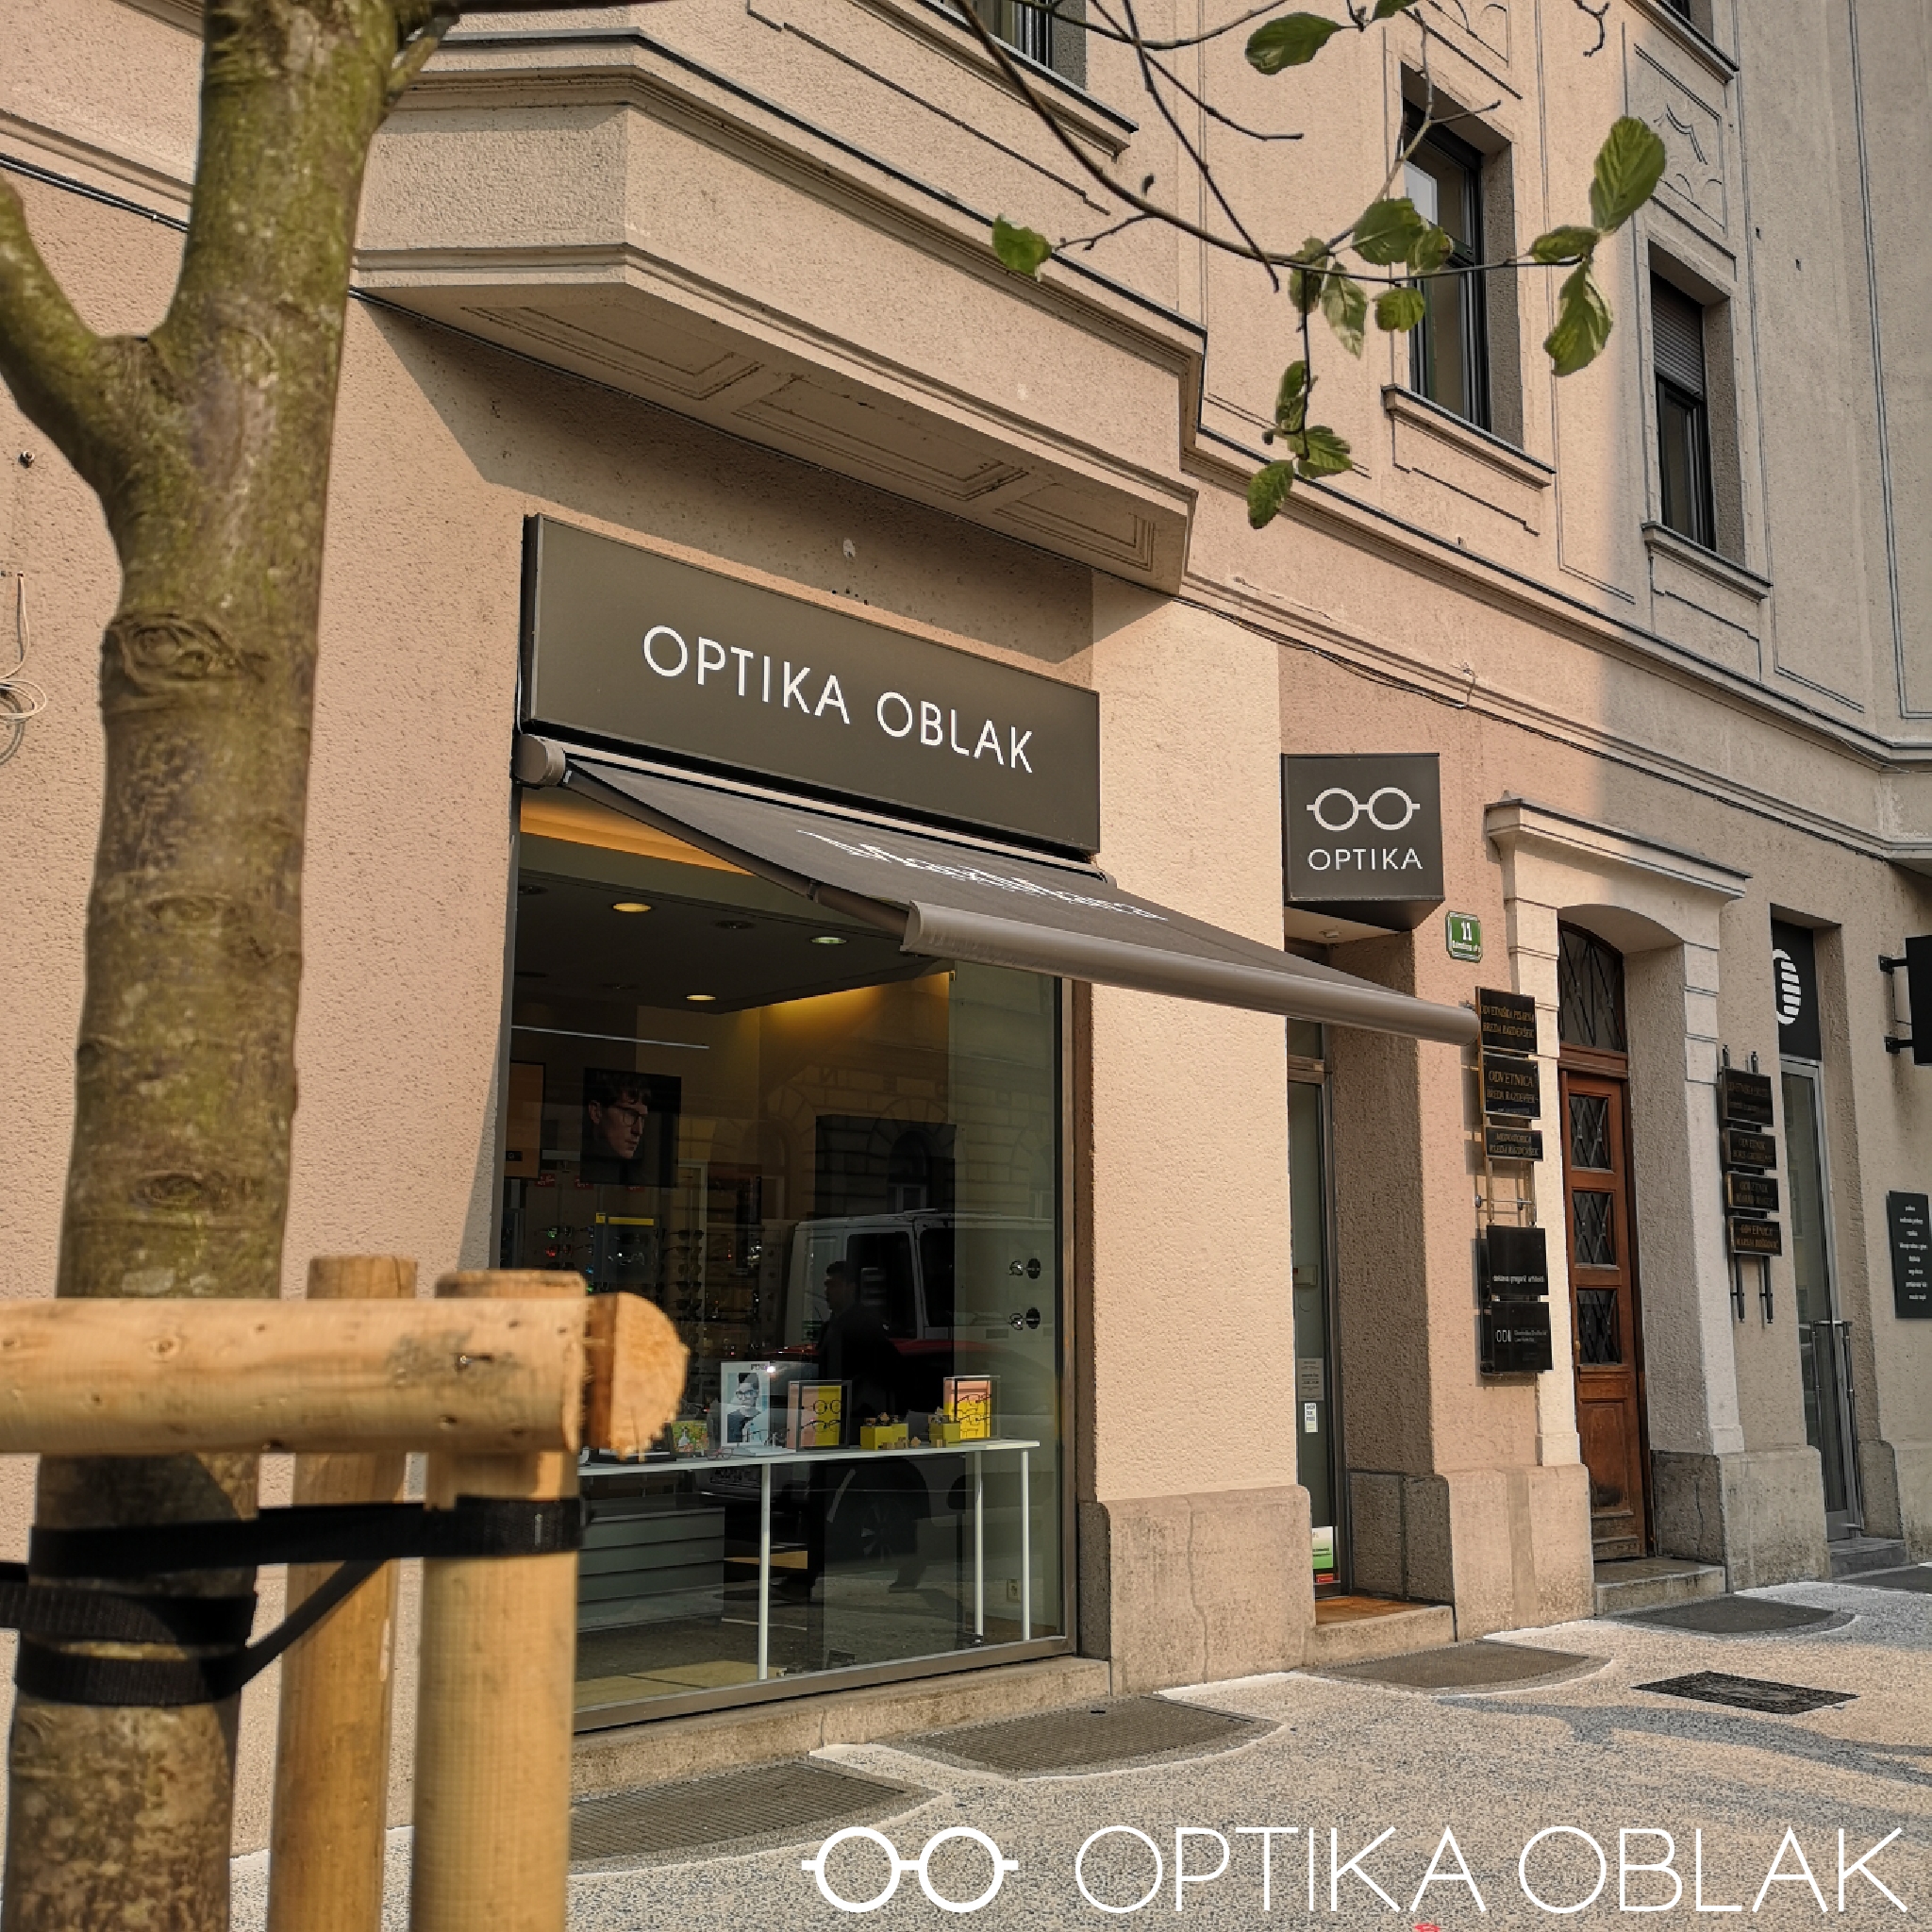 Optika Oblak - Ljubljana